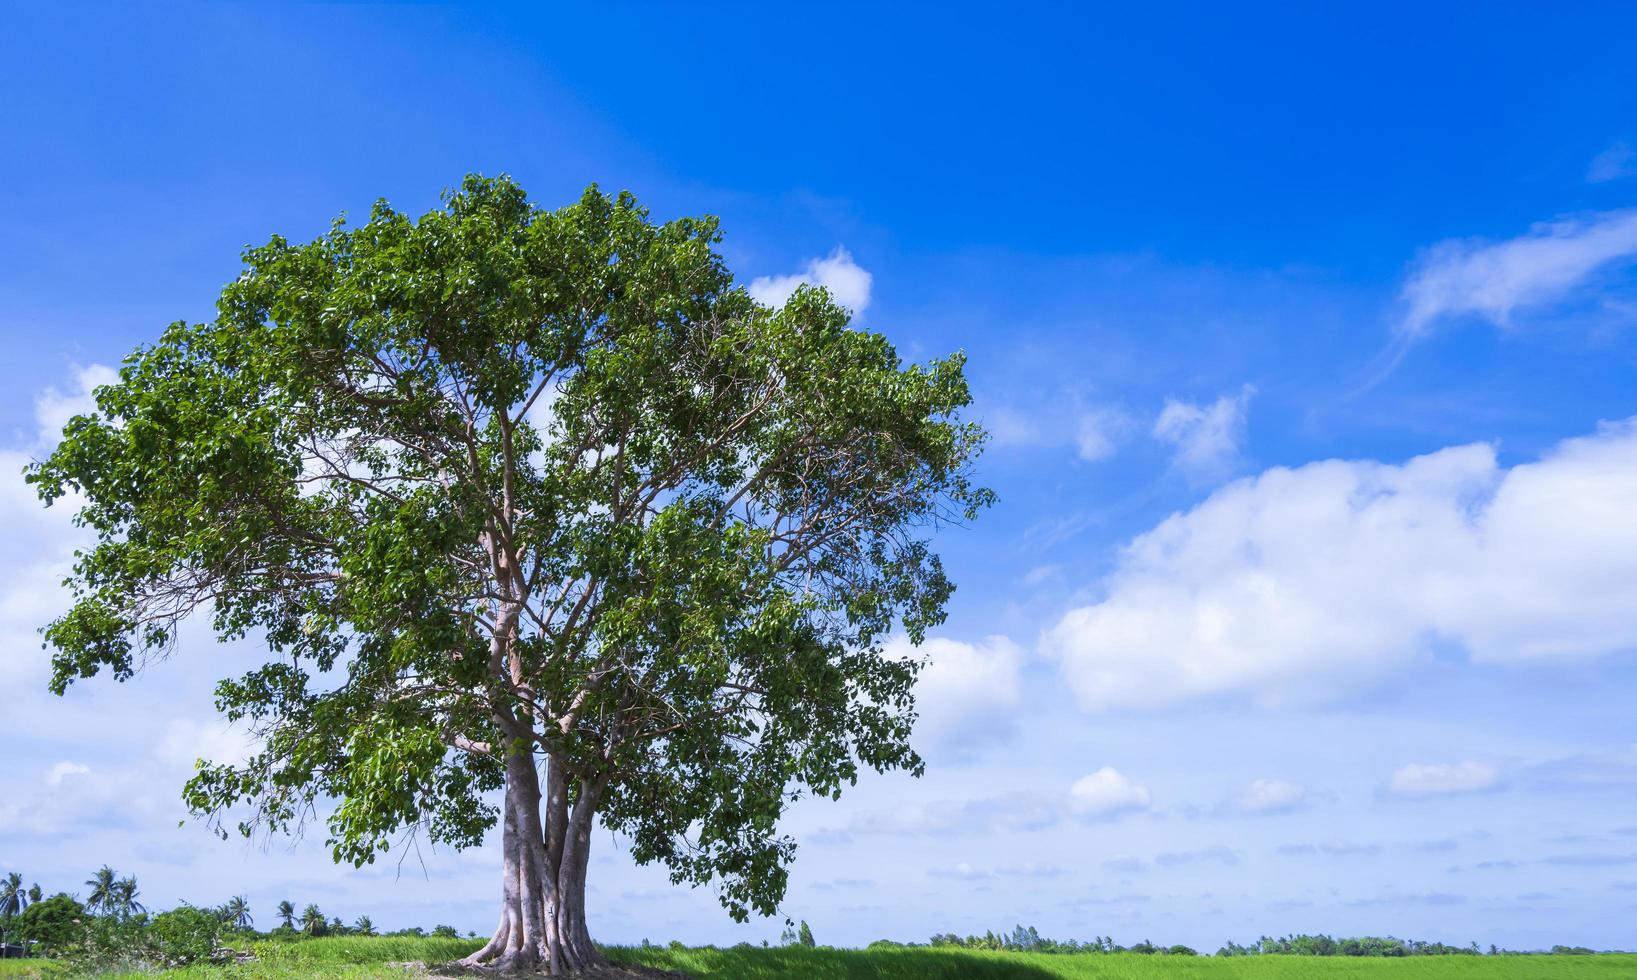 grand arbre de bodhi solitaire dans la rizière avec des nuages blancs et un fond de ciel bleu photo